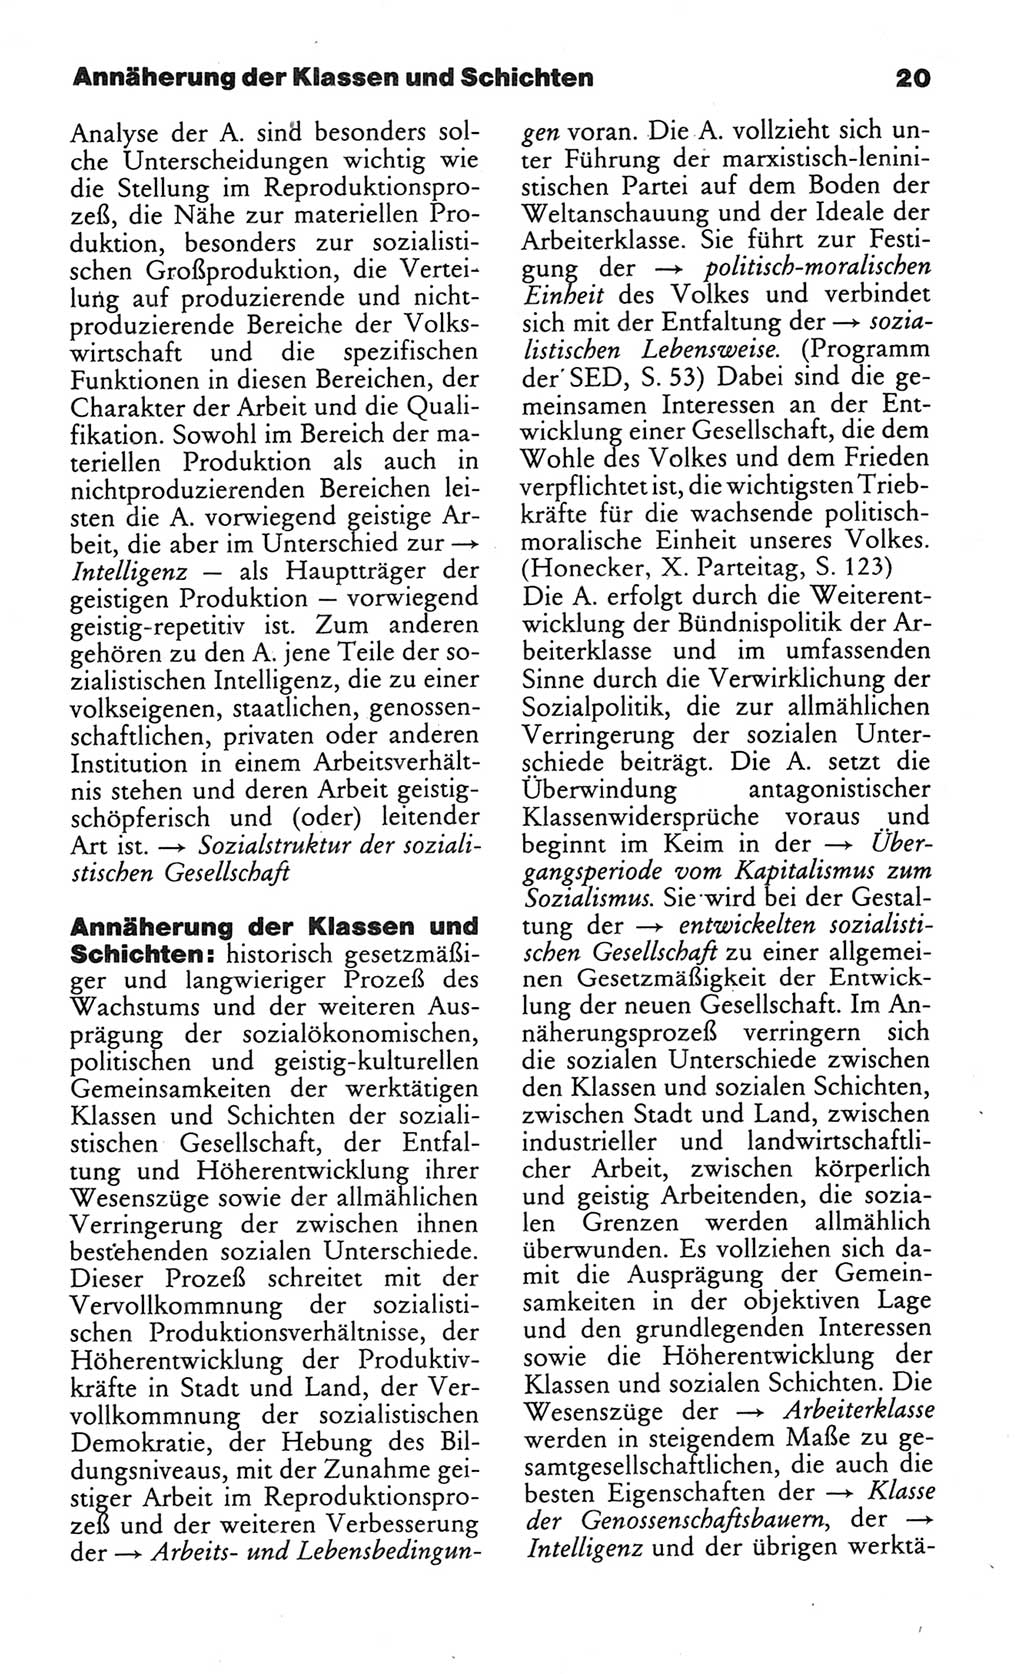 Wörterbuch des wissenschaftlichen Kommunismus [Deutsche Demokratische Republik (DDR)] 1984, Seite 20 (Wb. wiss. Komm. DDR 1984, S. 20)